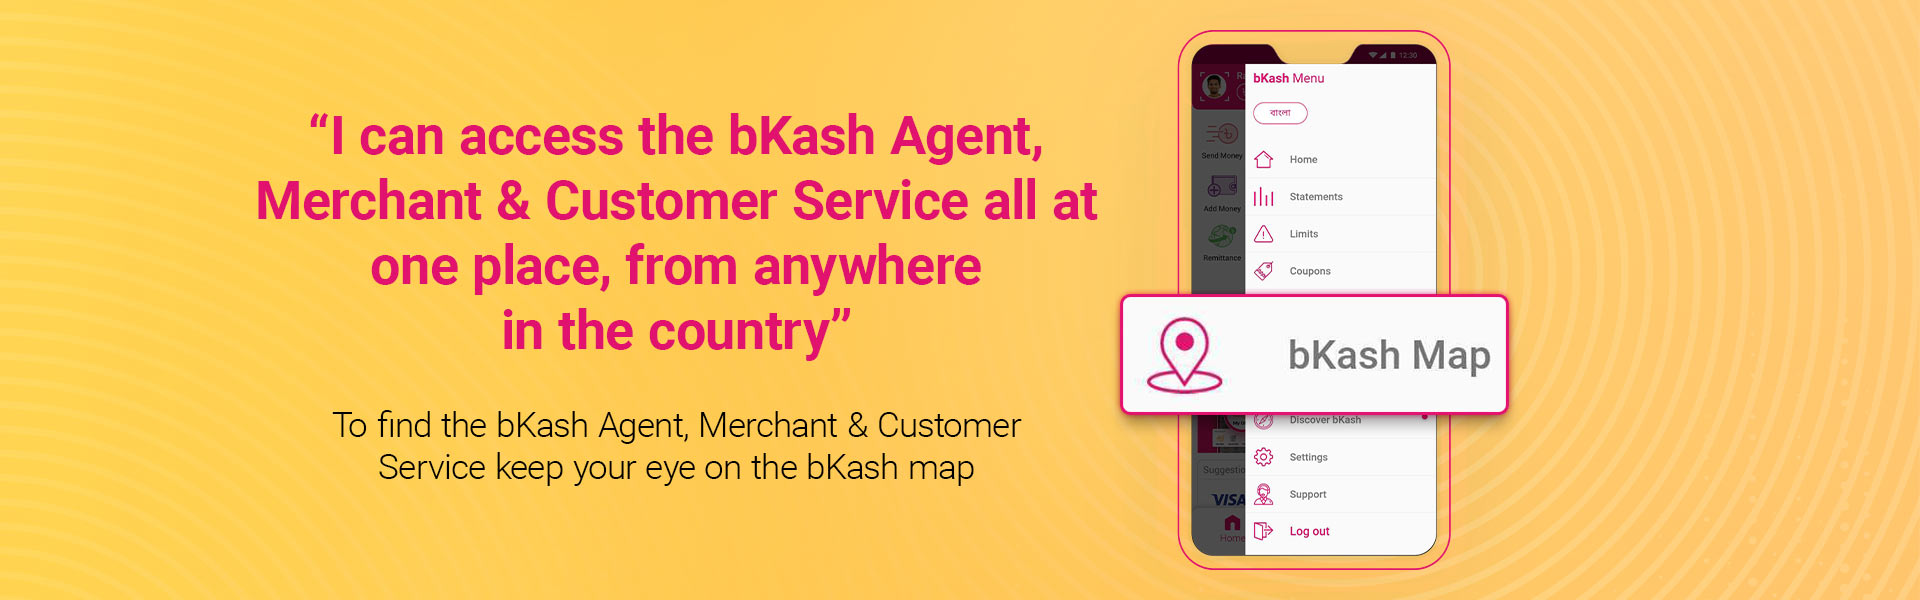 bkash app feature - desktop